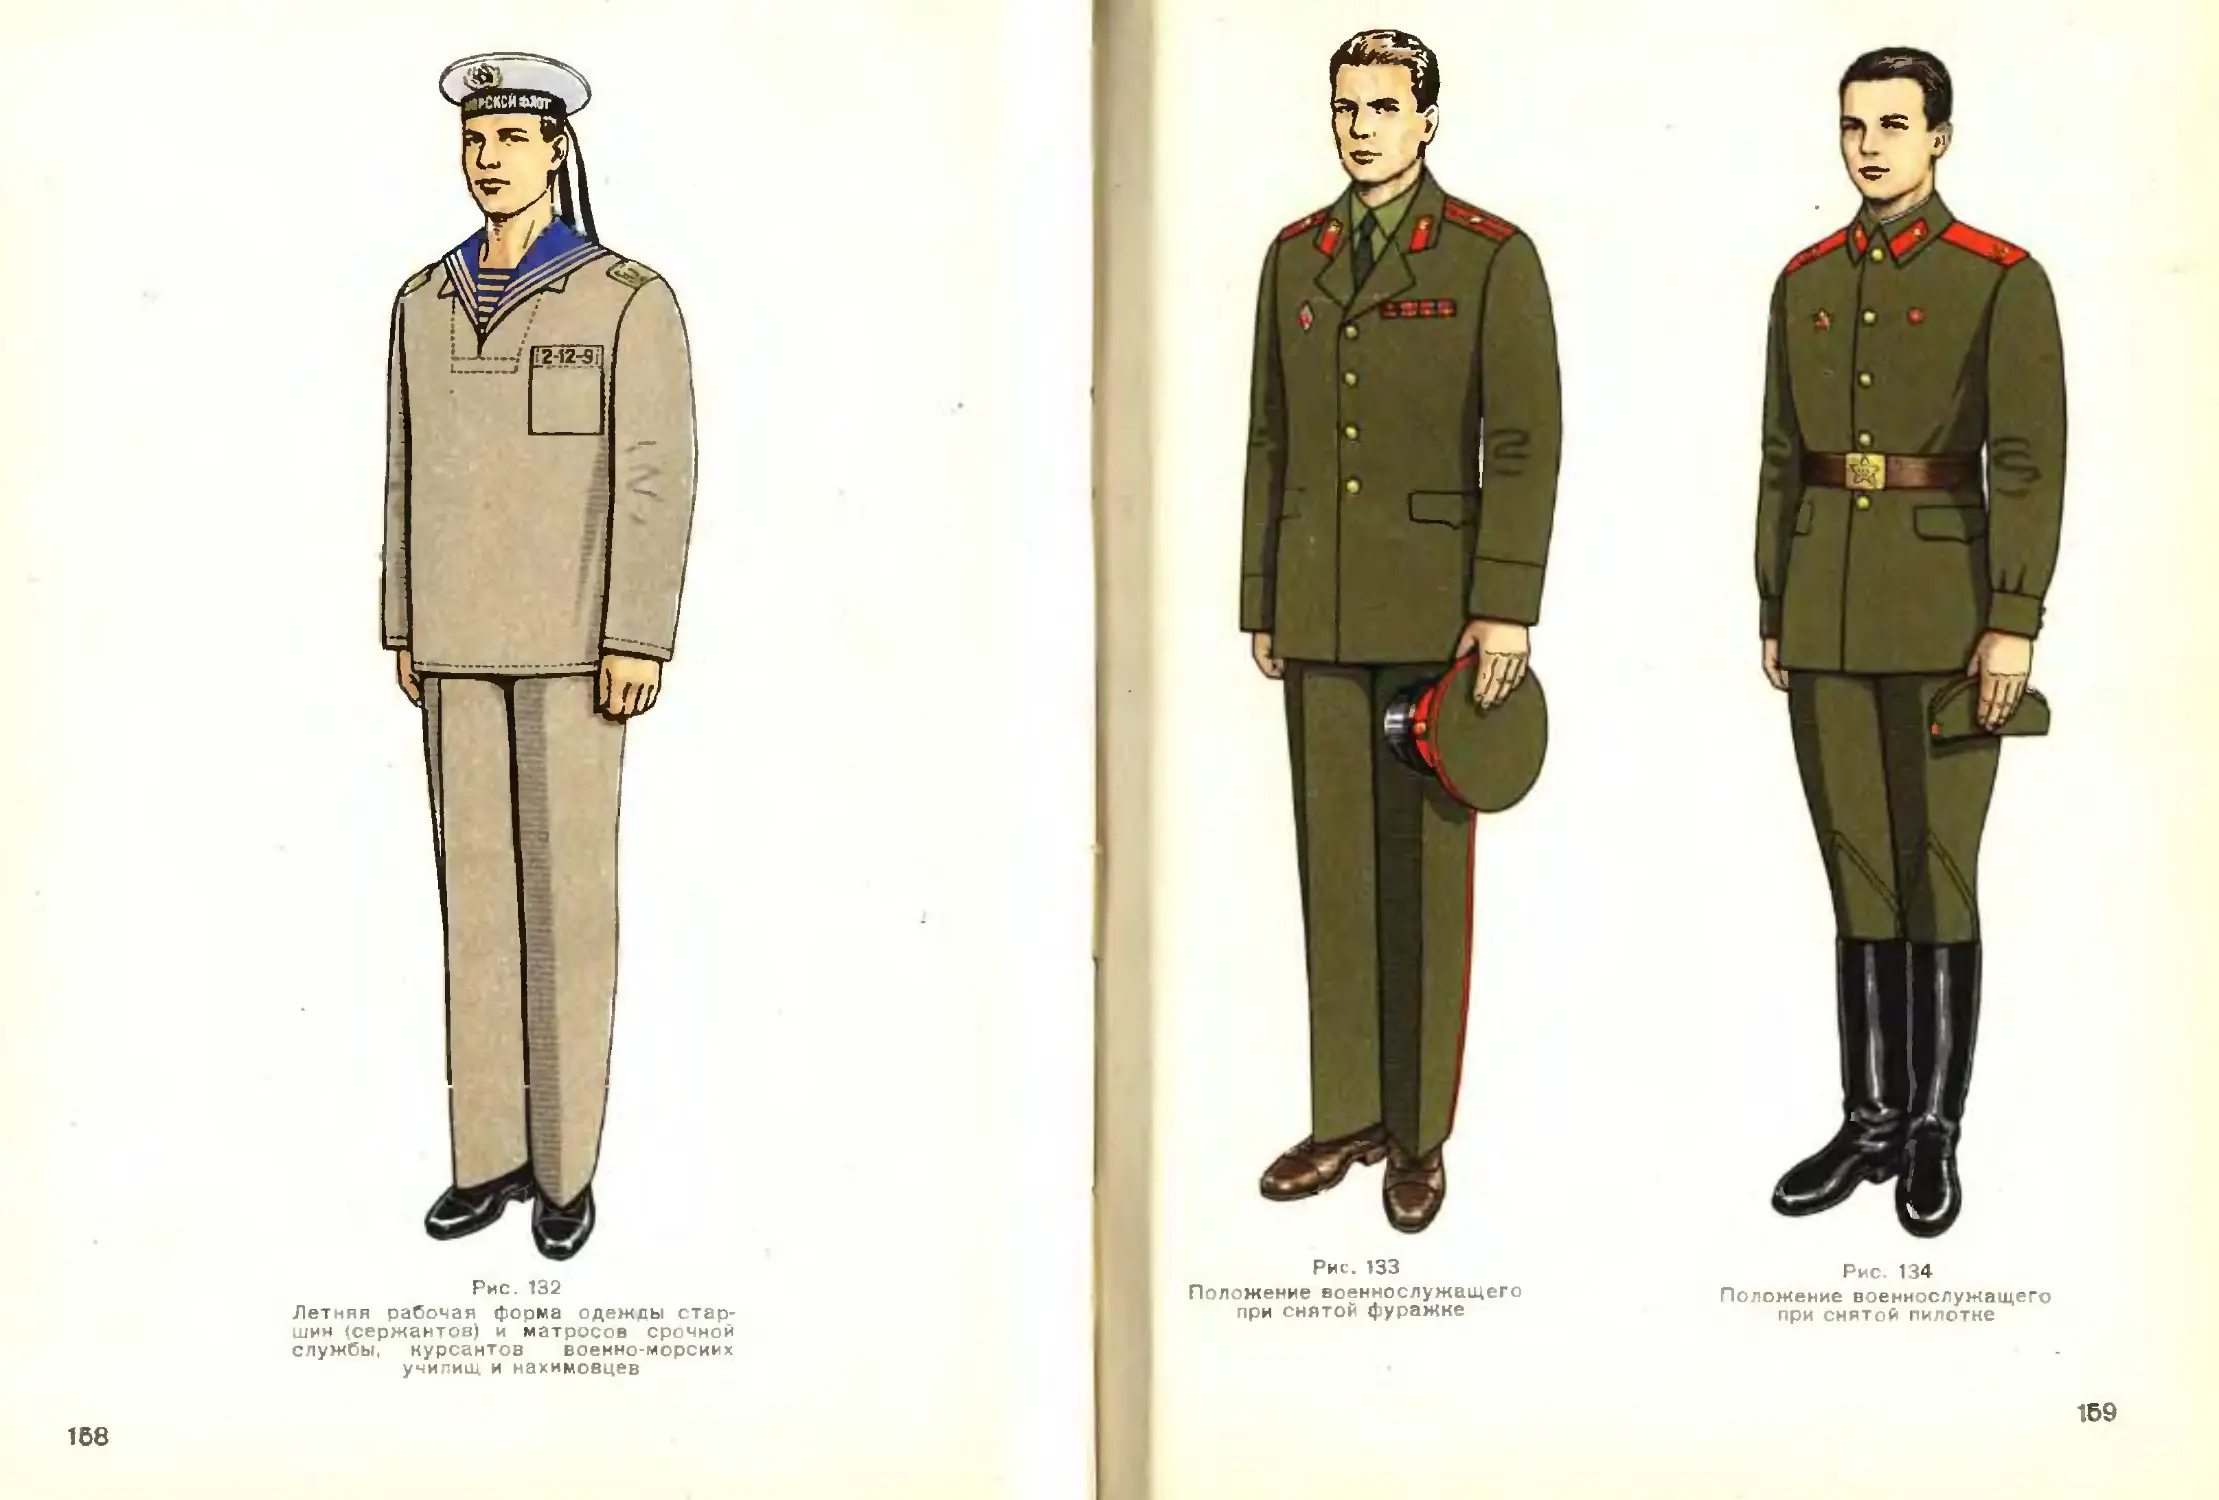 Одежда солдата рисунок. Рисунок верхняя одежда солдата. Ателье военной формы. Форма одежды военнослужащих СССР до 1967 года. Рост военной формы